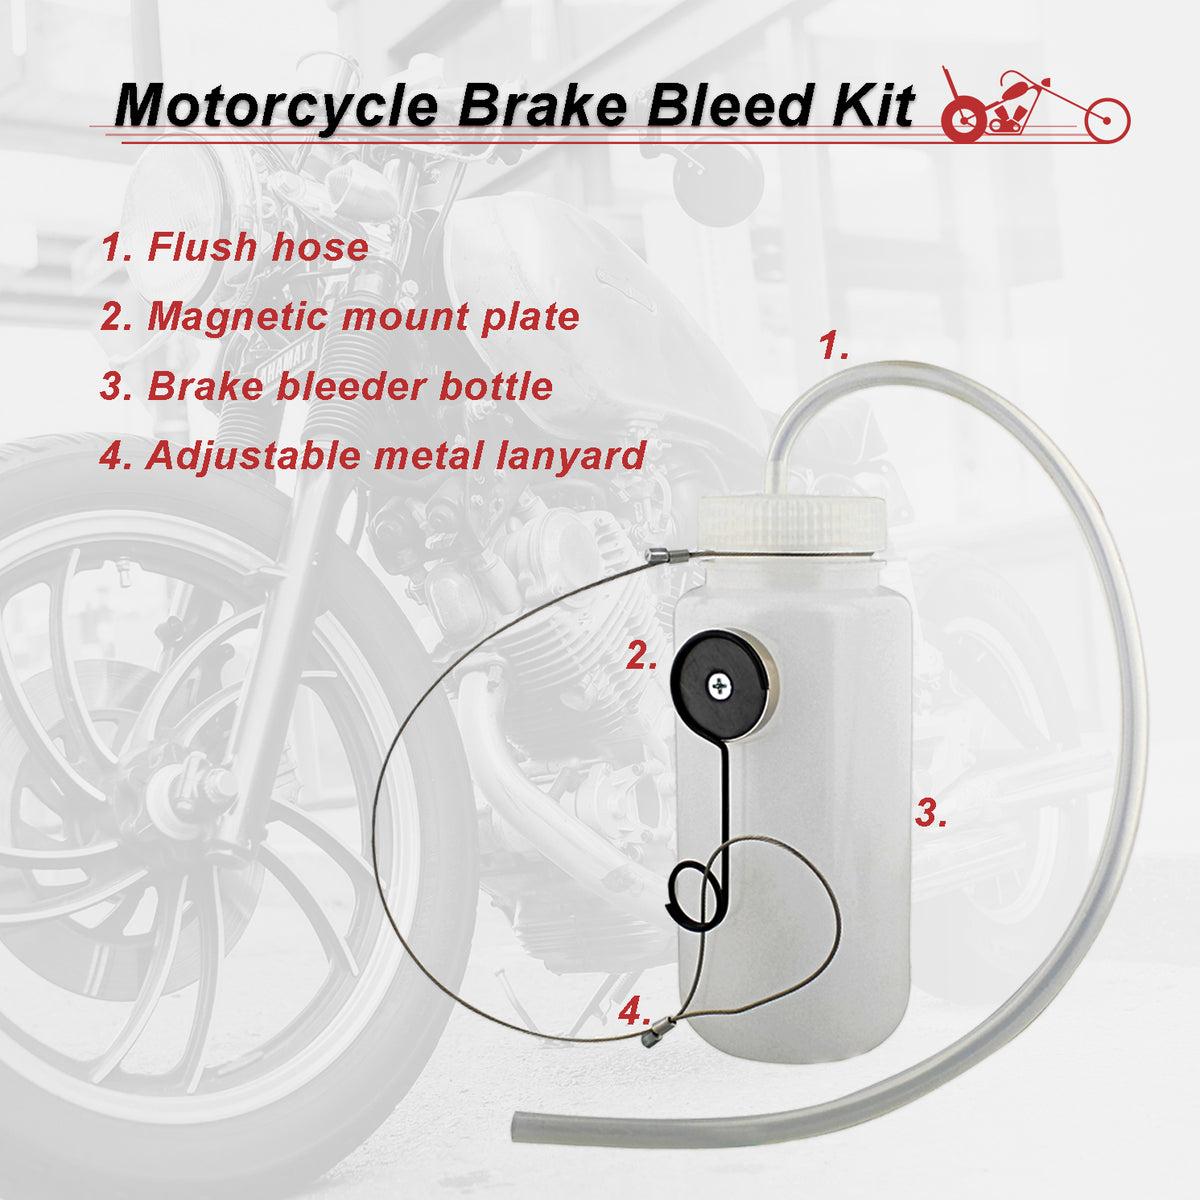 Motorcycle Brake Bleeder Kit - 16 oz Manual Brake Bleeding Kit